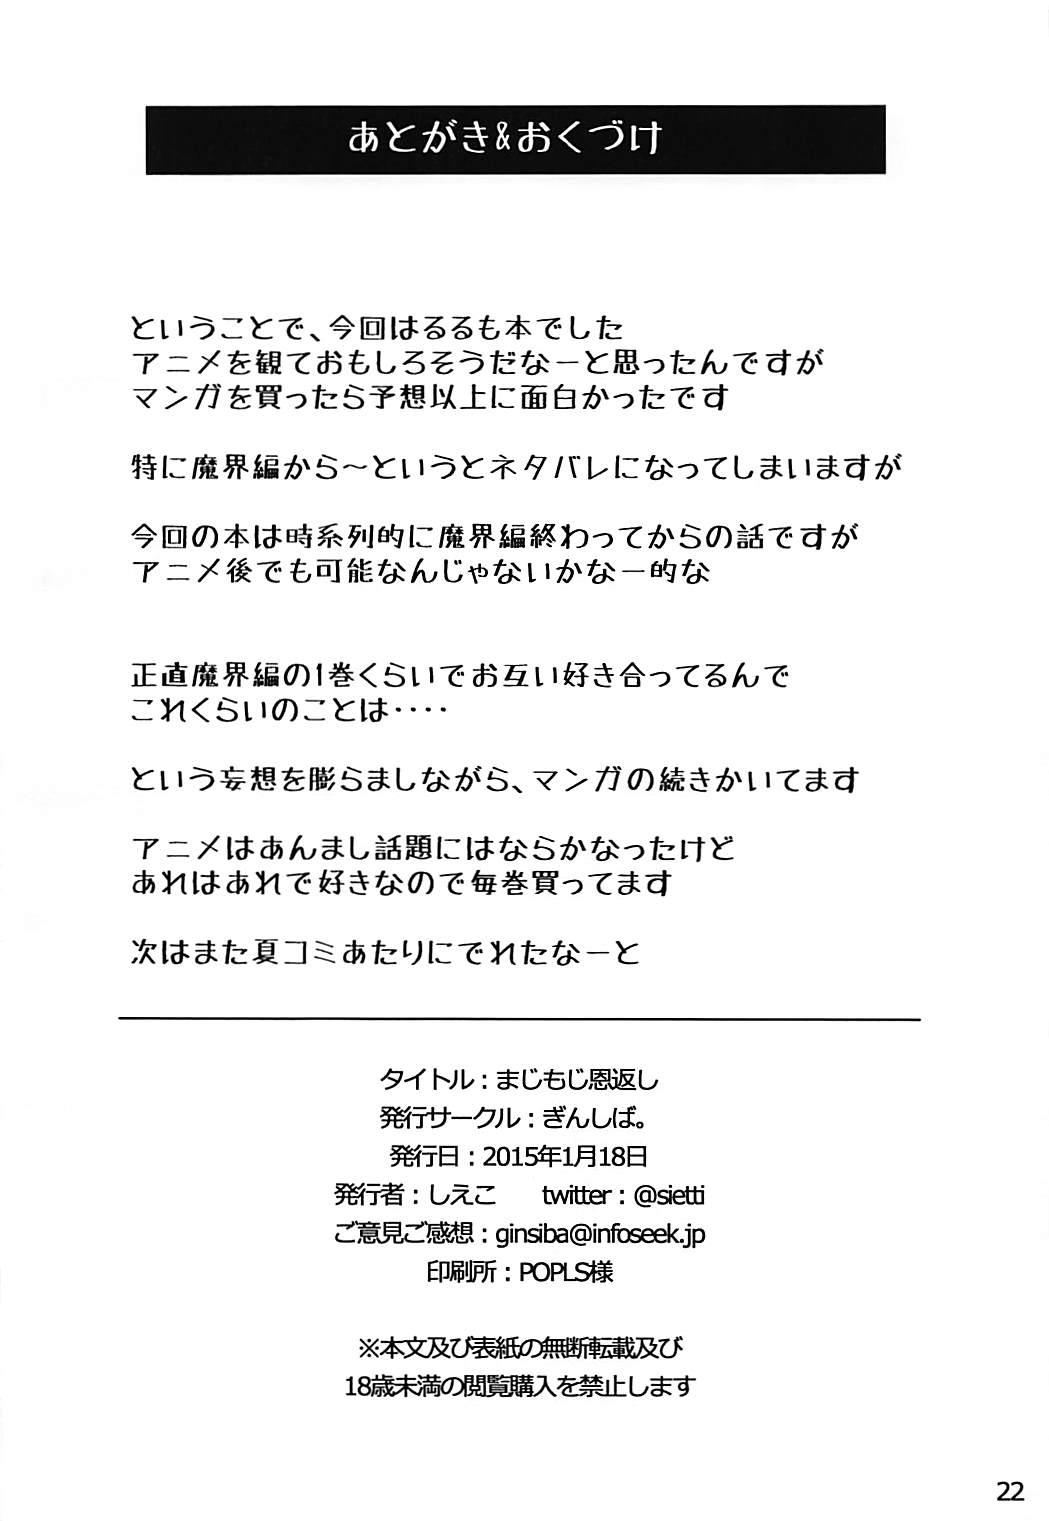 Cojiendo Magimoji Ongaeshi - Magimoji rurumo Bunduda - Page 21